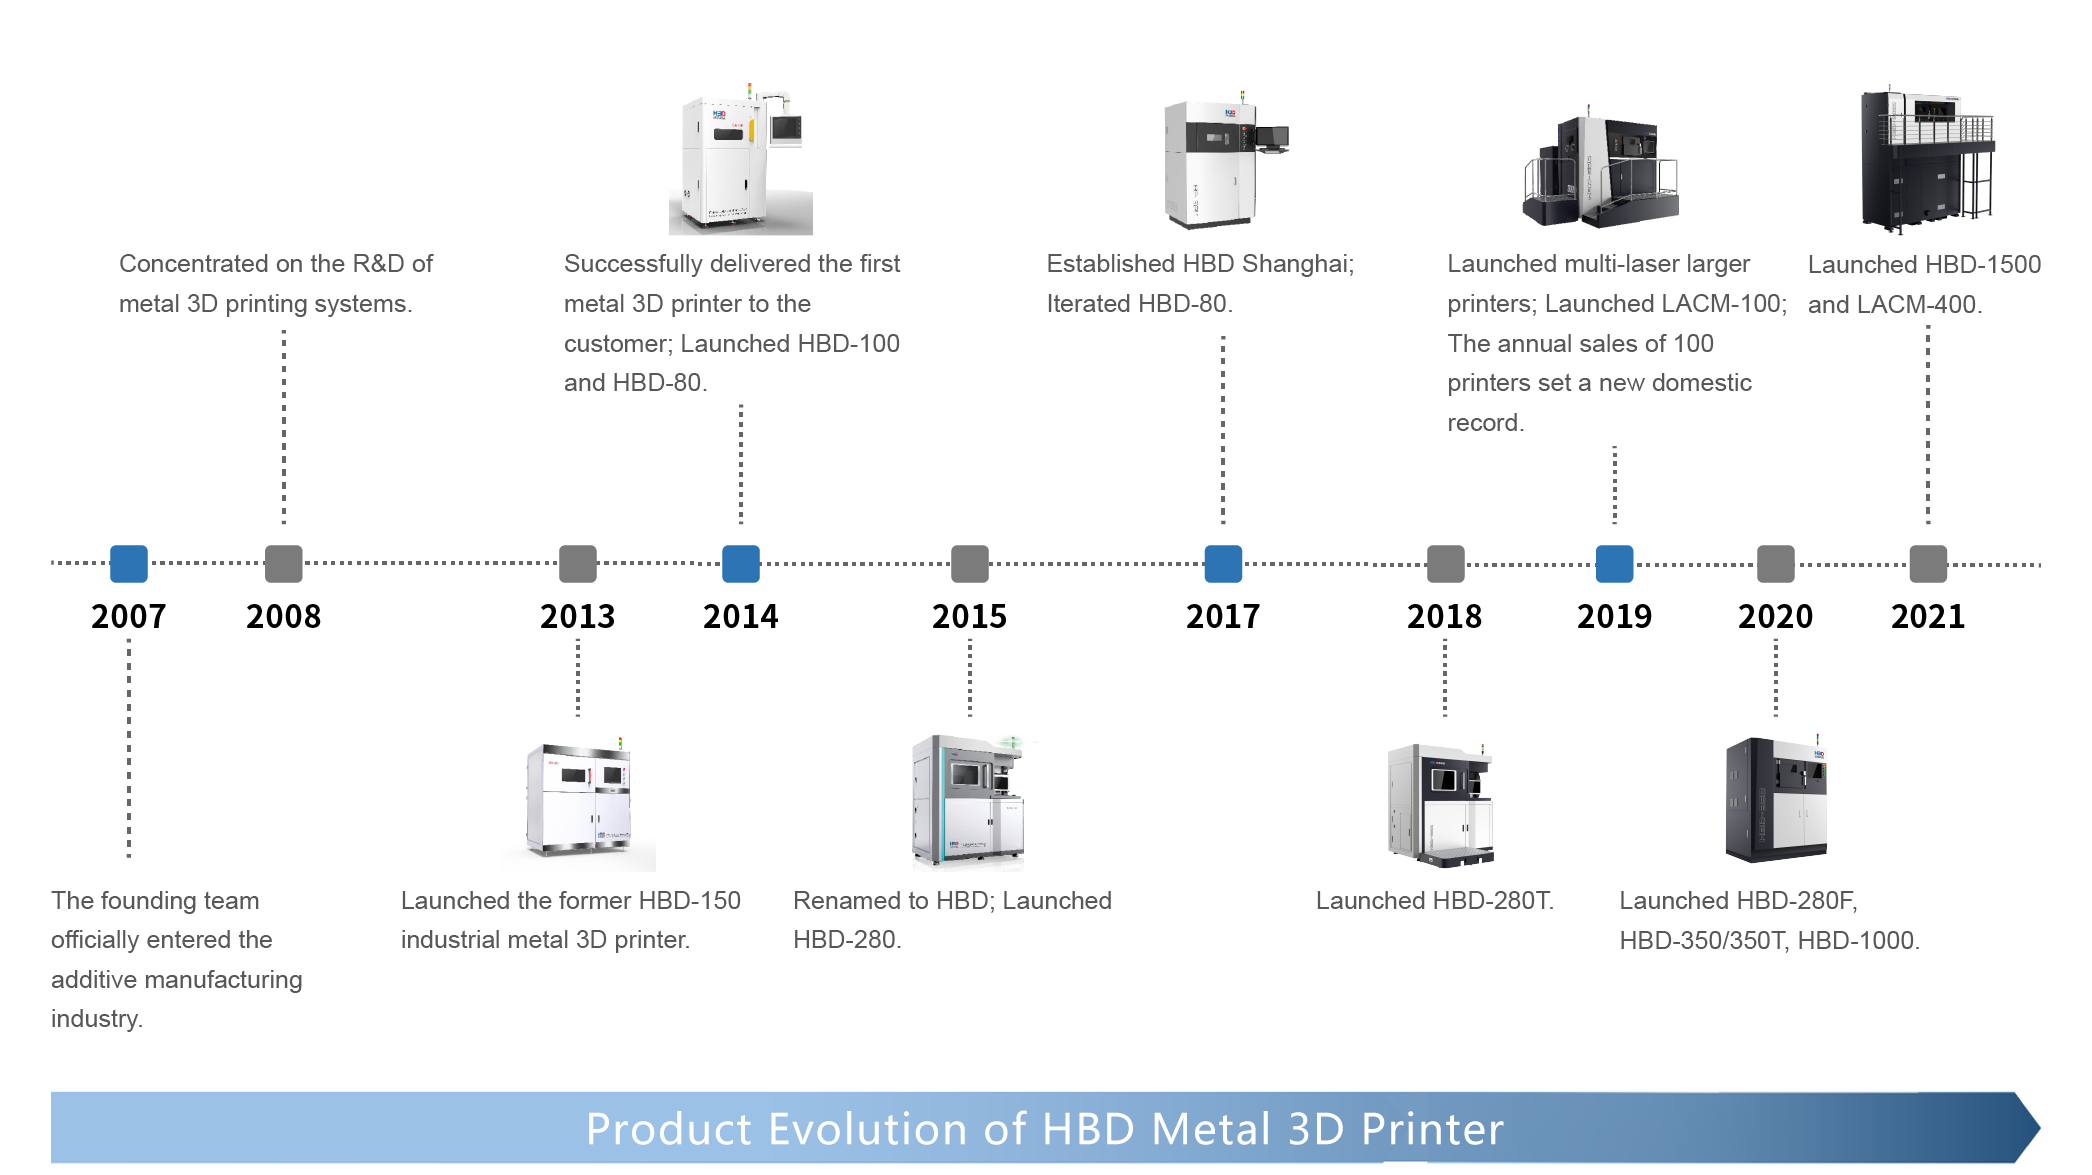 Evolución del producto de la impresora 3D de metal HBD